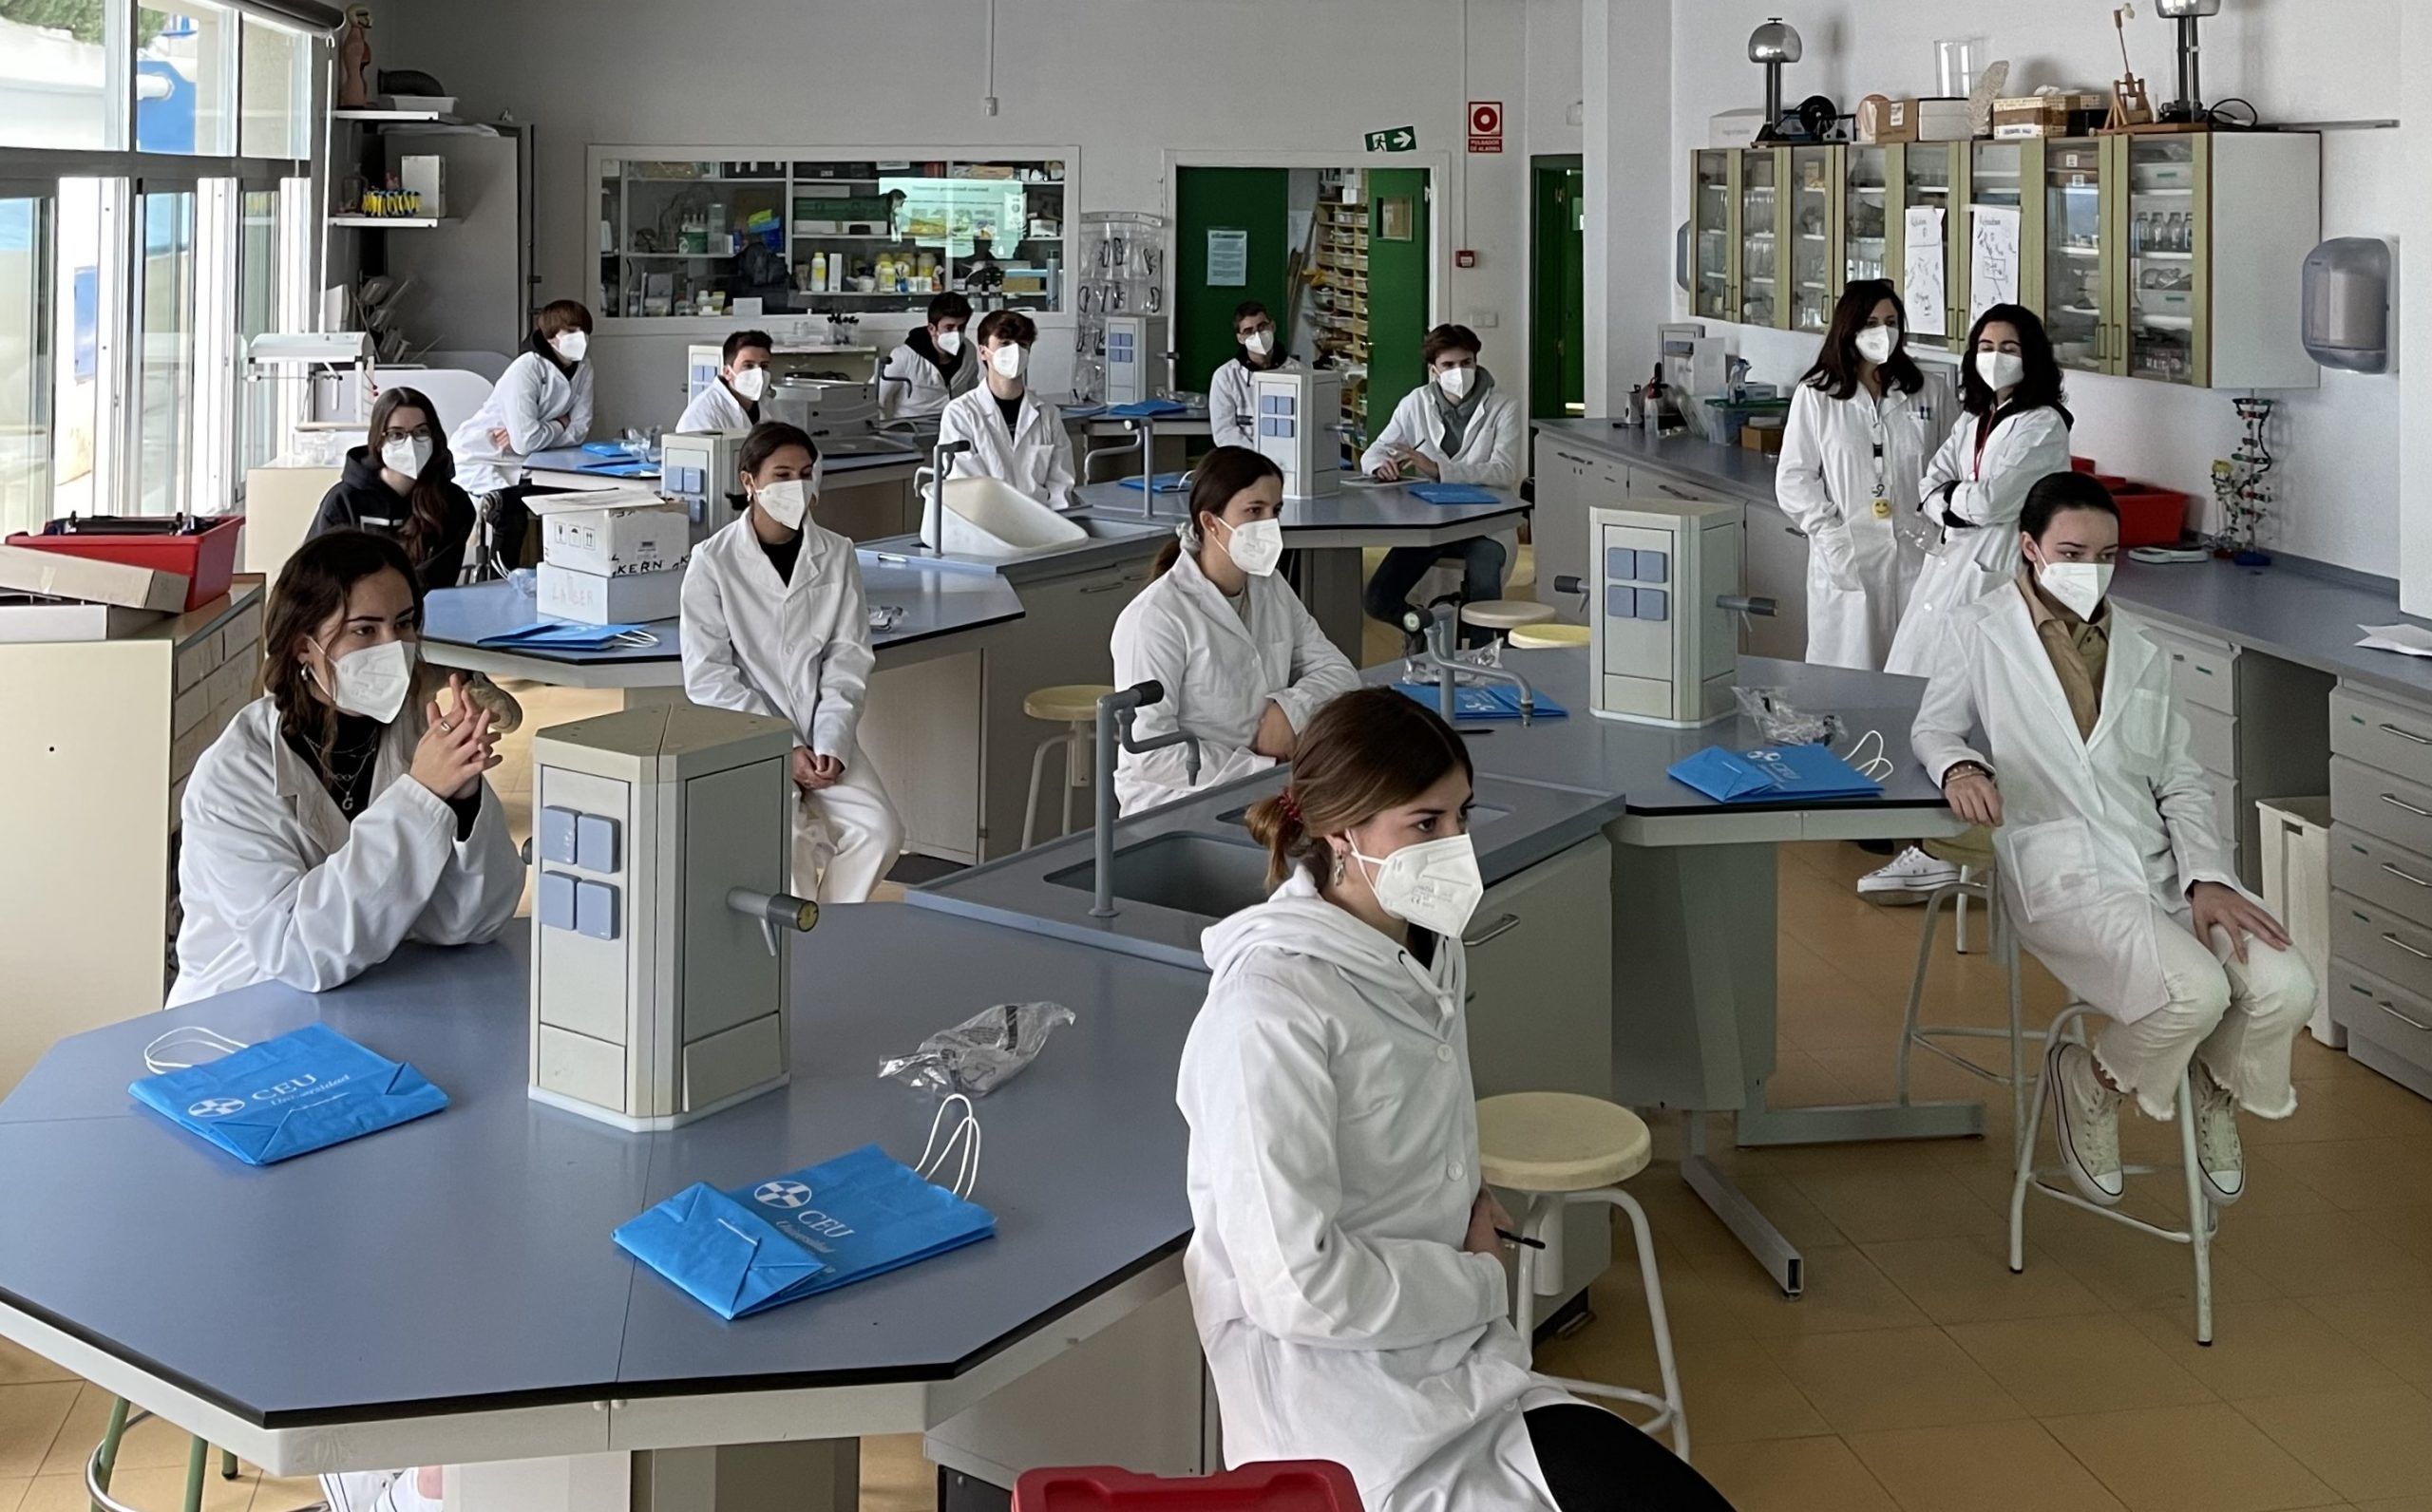 Primera sesión del proyecto de búsqueda de nuevos antibióticos, dirigida por el equipo SWICEU en el colegio American School of Valencia.